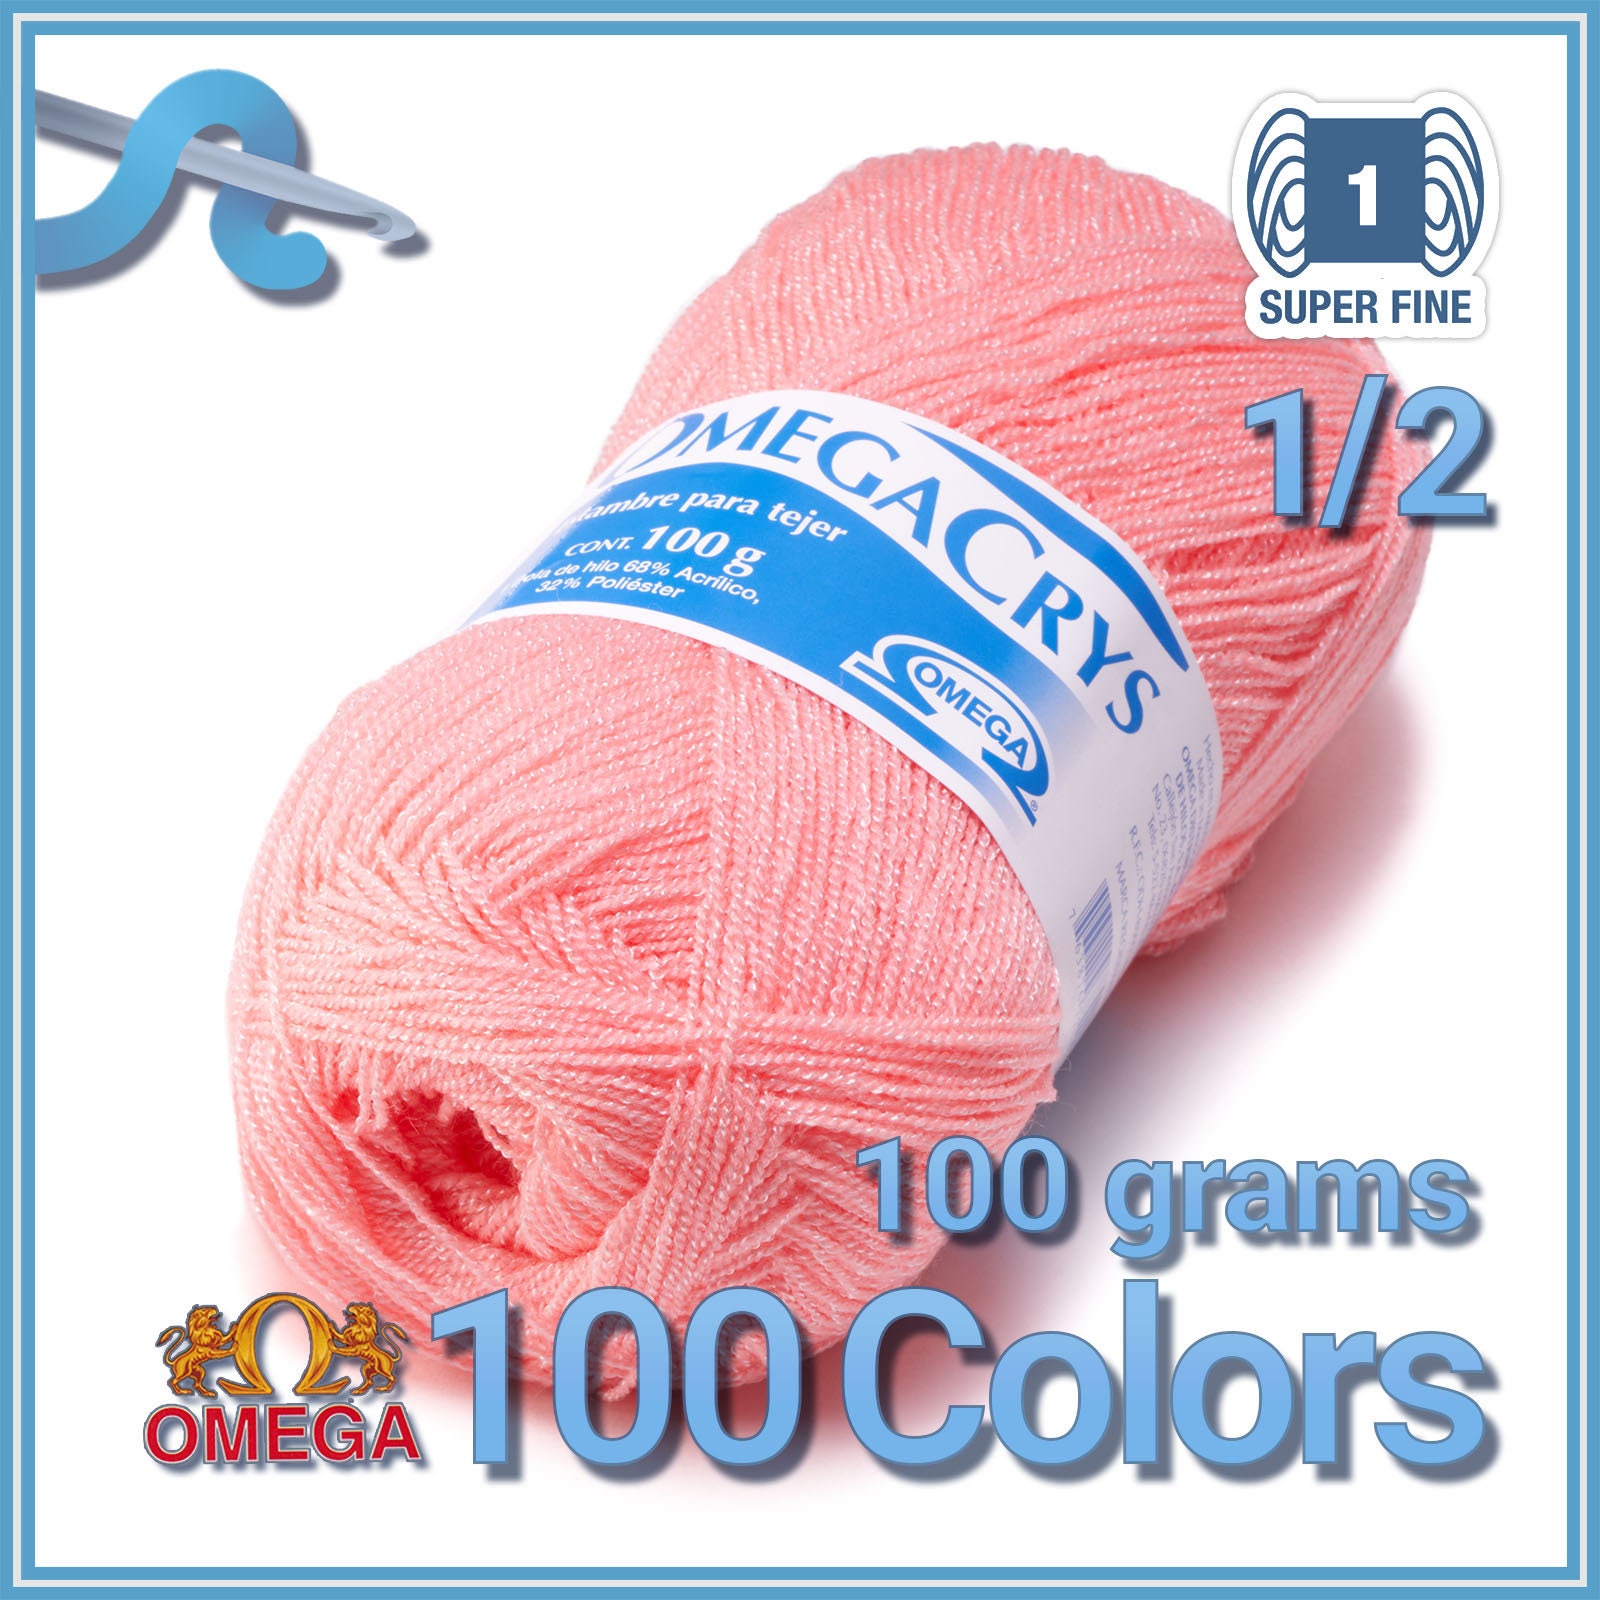 Hilo/Estambre Cristal Para Tejer/Bordar Crochet A Mano de Mexico, (Paquete de 6) Multicolor. | Crystal Yarn from Mexico to Embroider Crochet